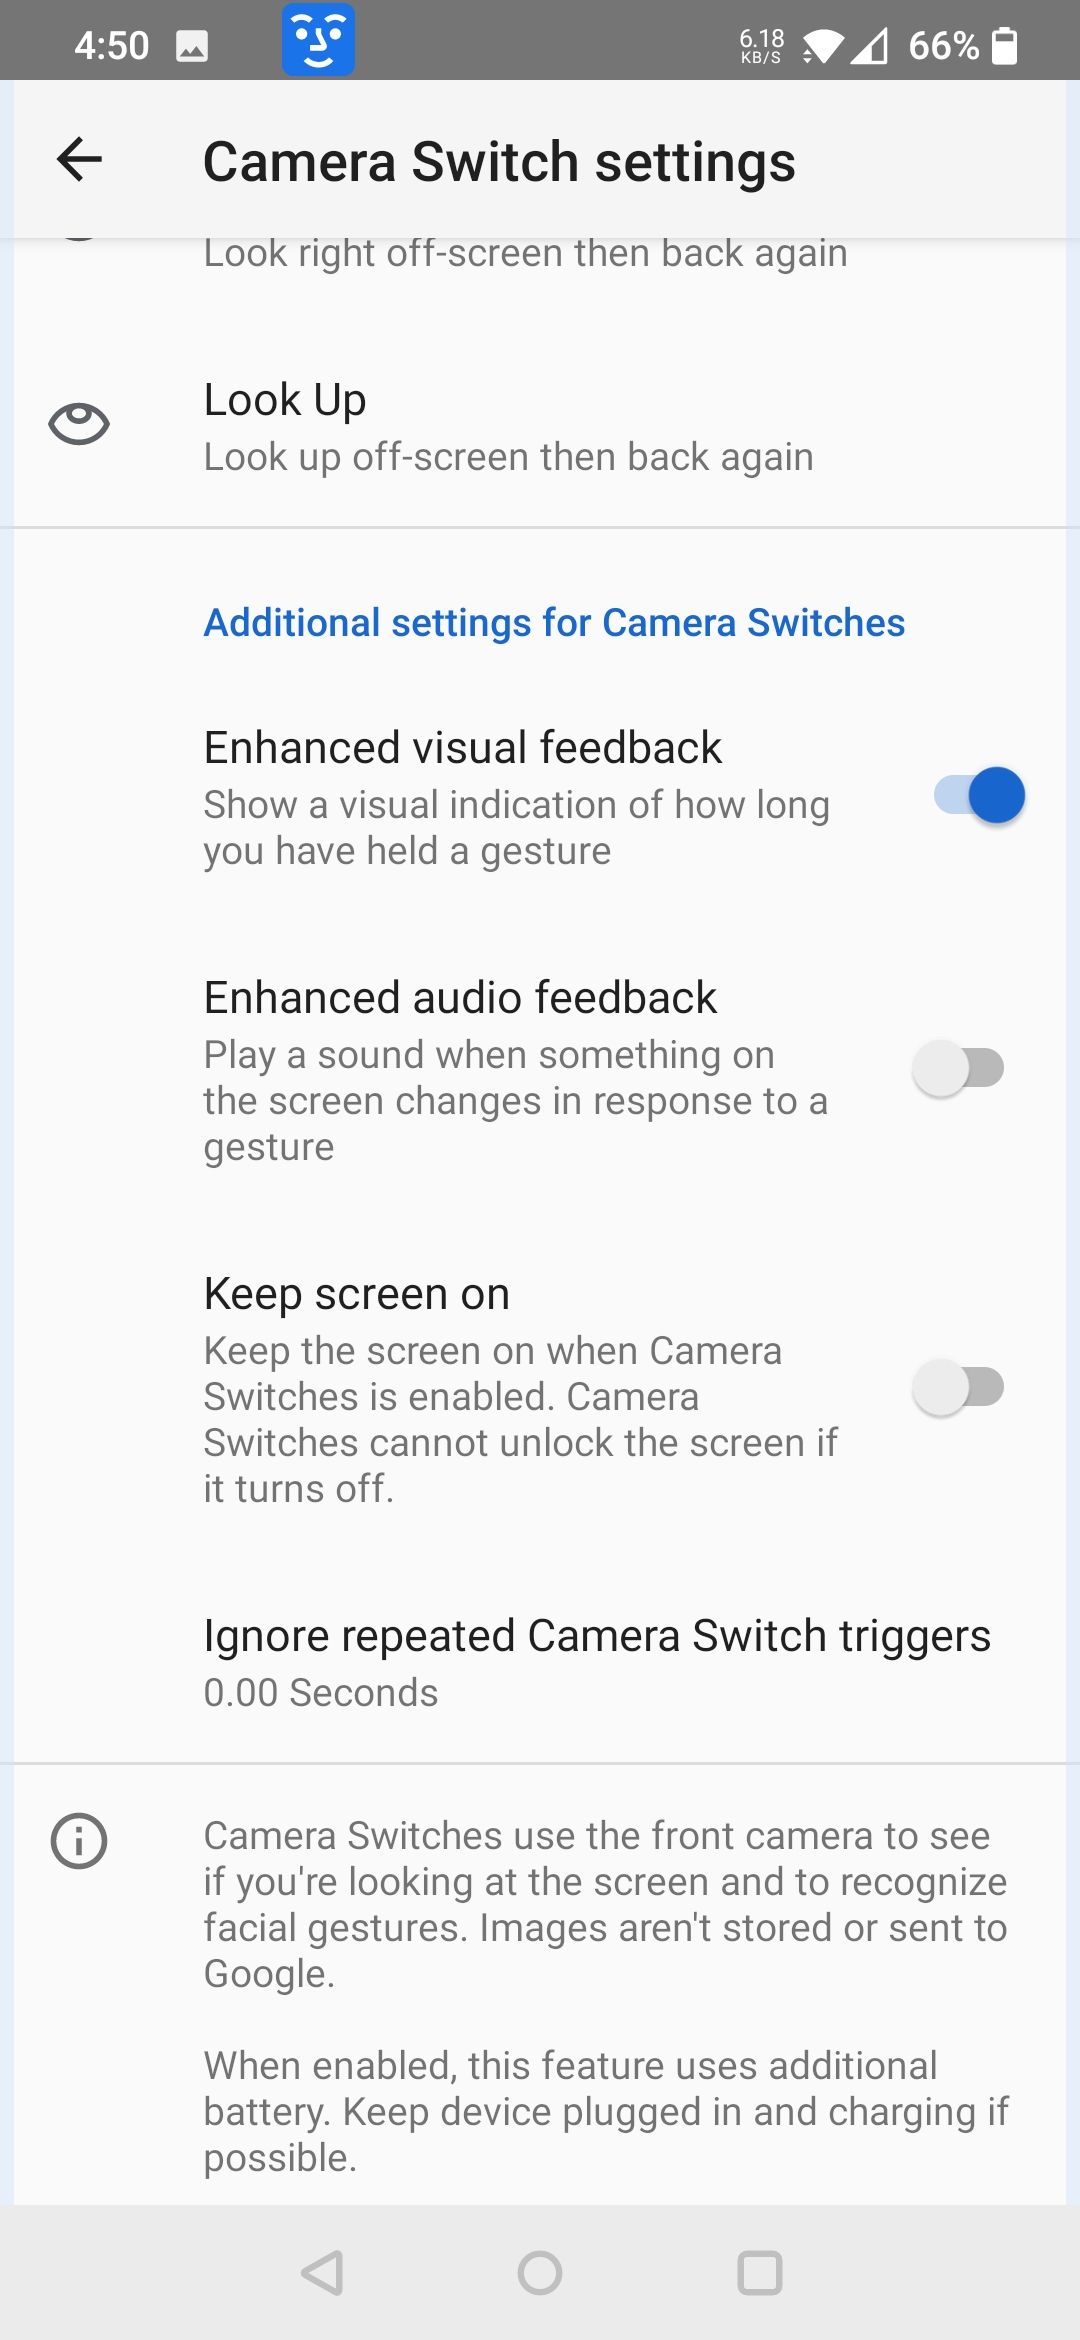 additional camera switch settings